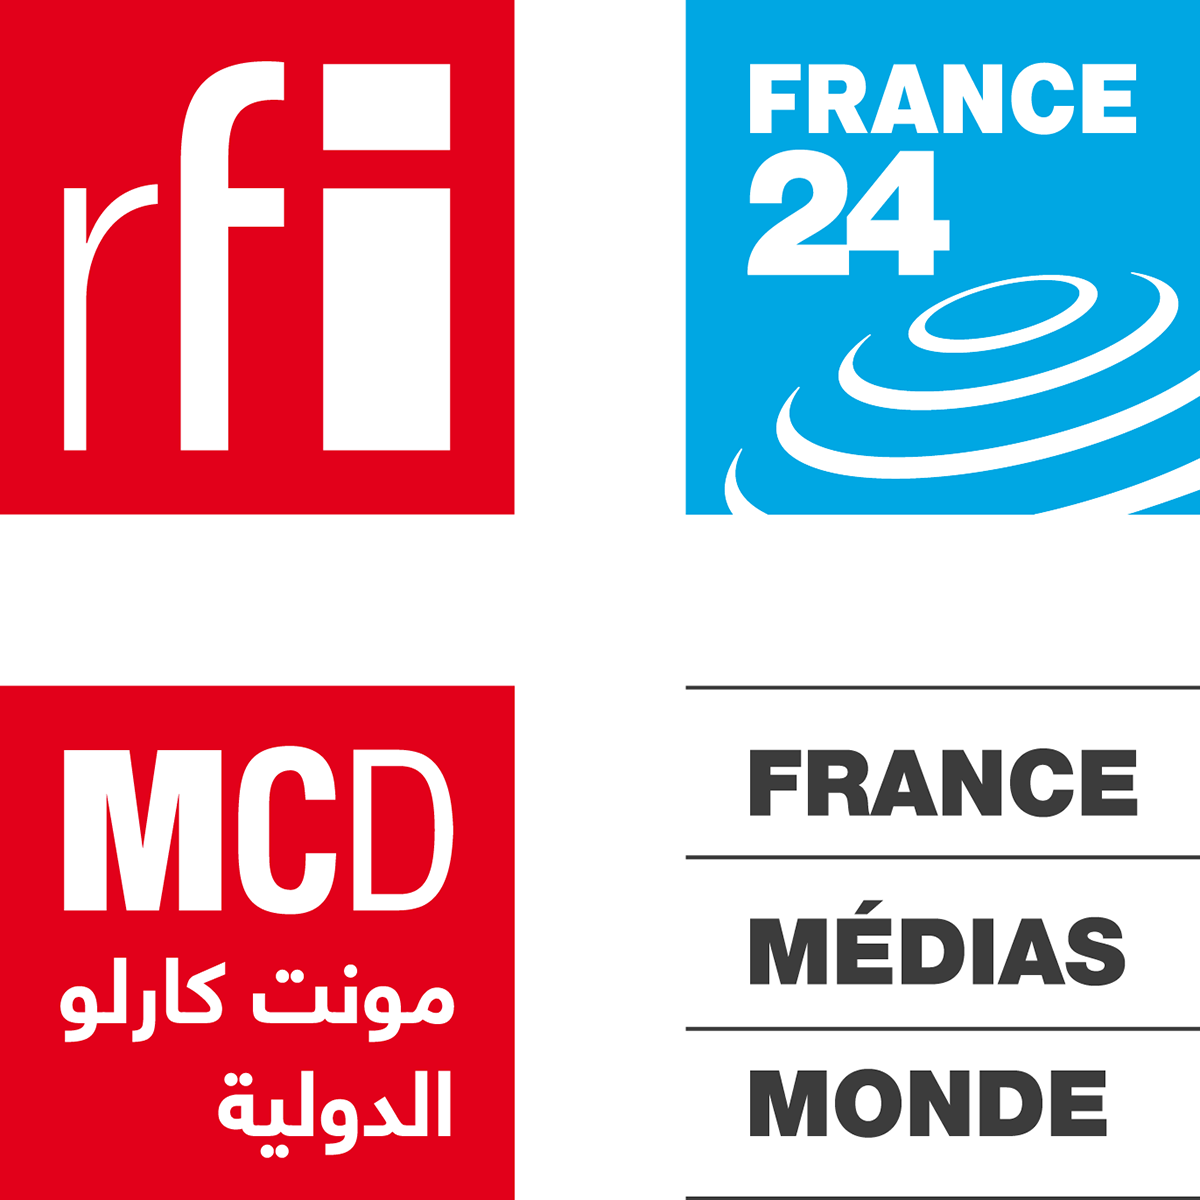 France Medias Monde adopte le player de Radio France